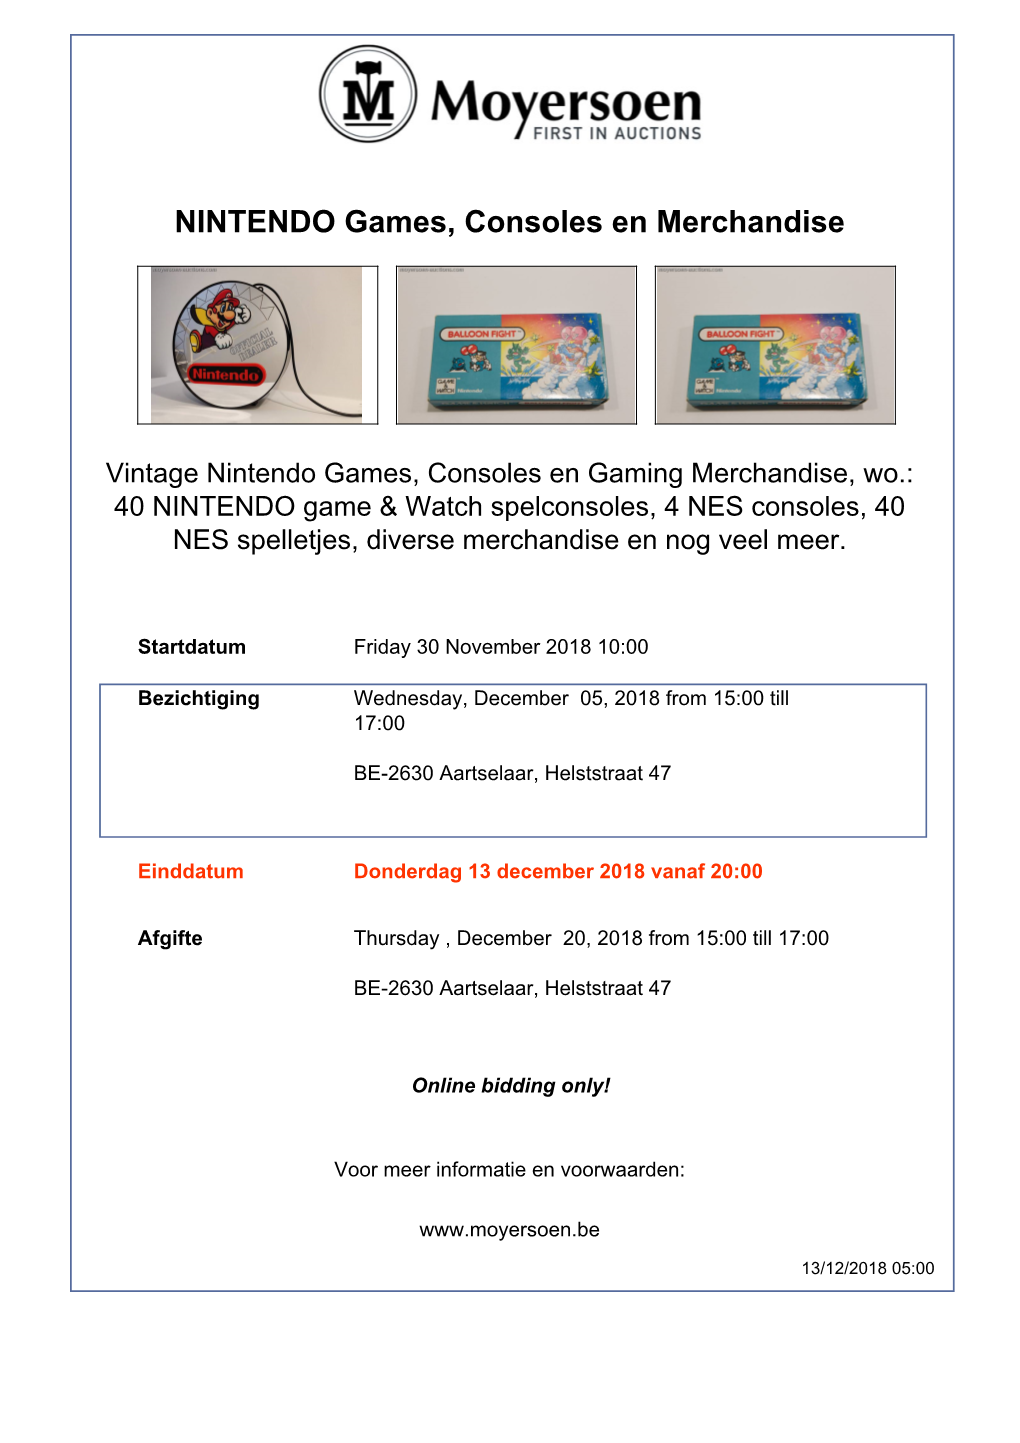 NINTENDO Games, Consoles En Merchandise